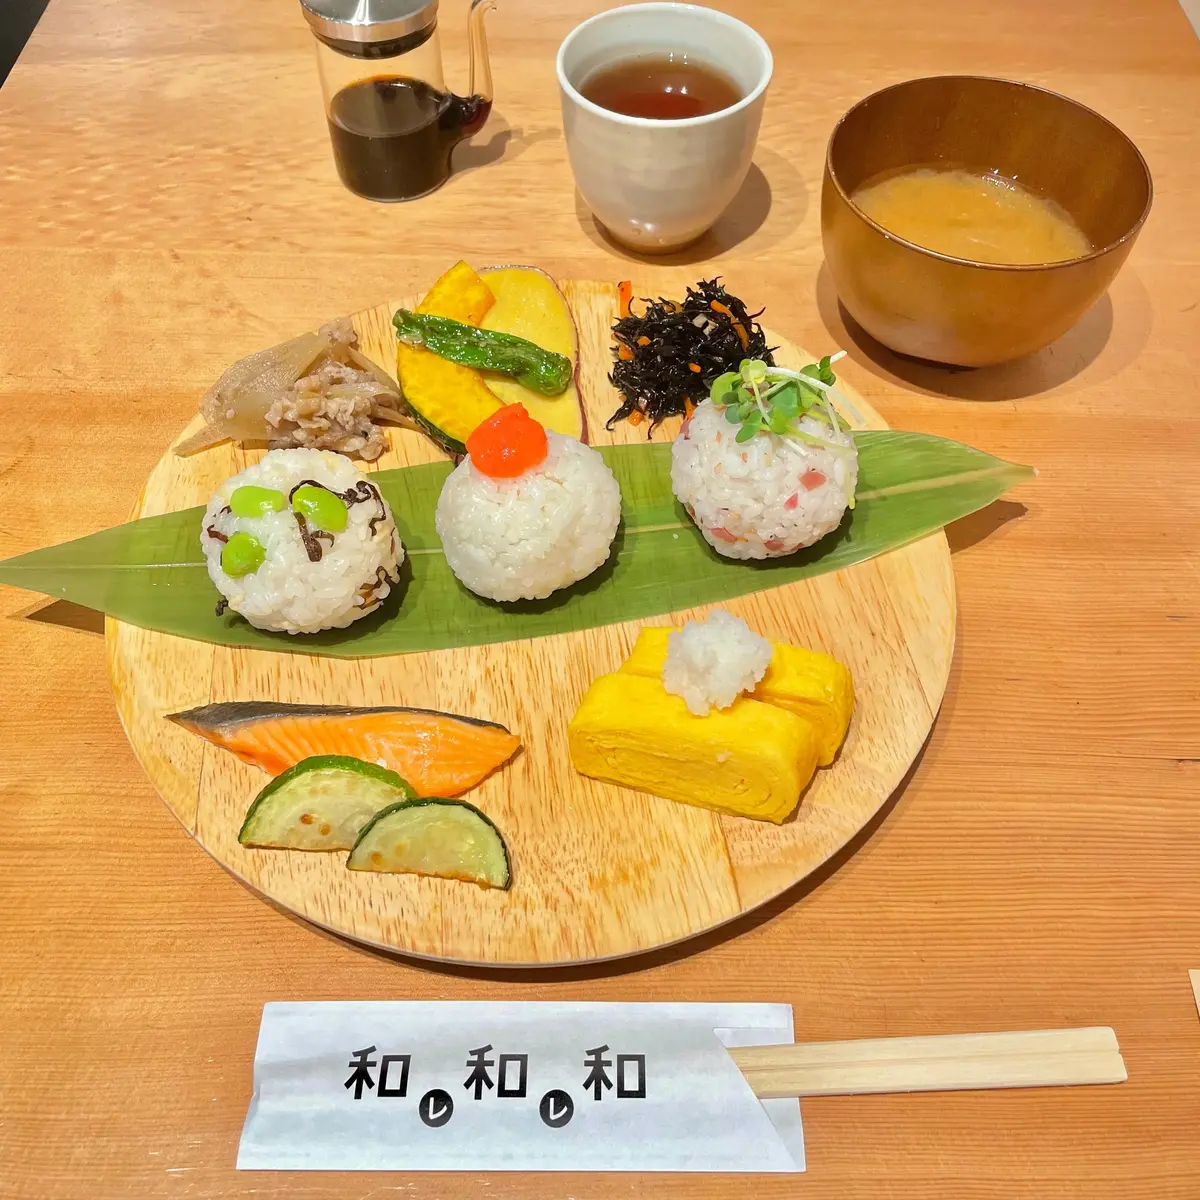 「パンとエスプレッソと」の系列店、大阪 本町で朝から行列ができるカフェ「和レ和レ和」の「おにぎり定食」